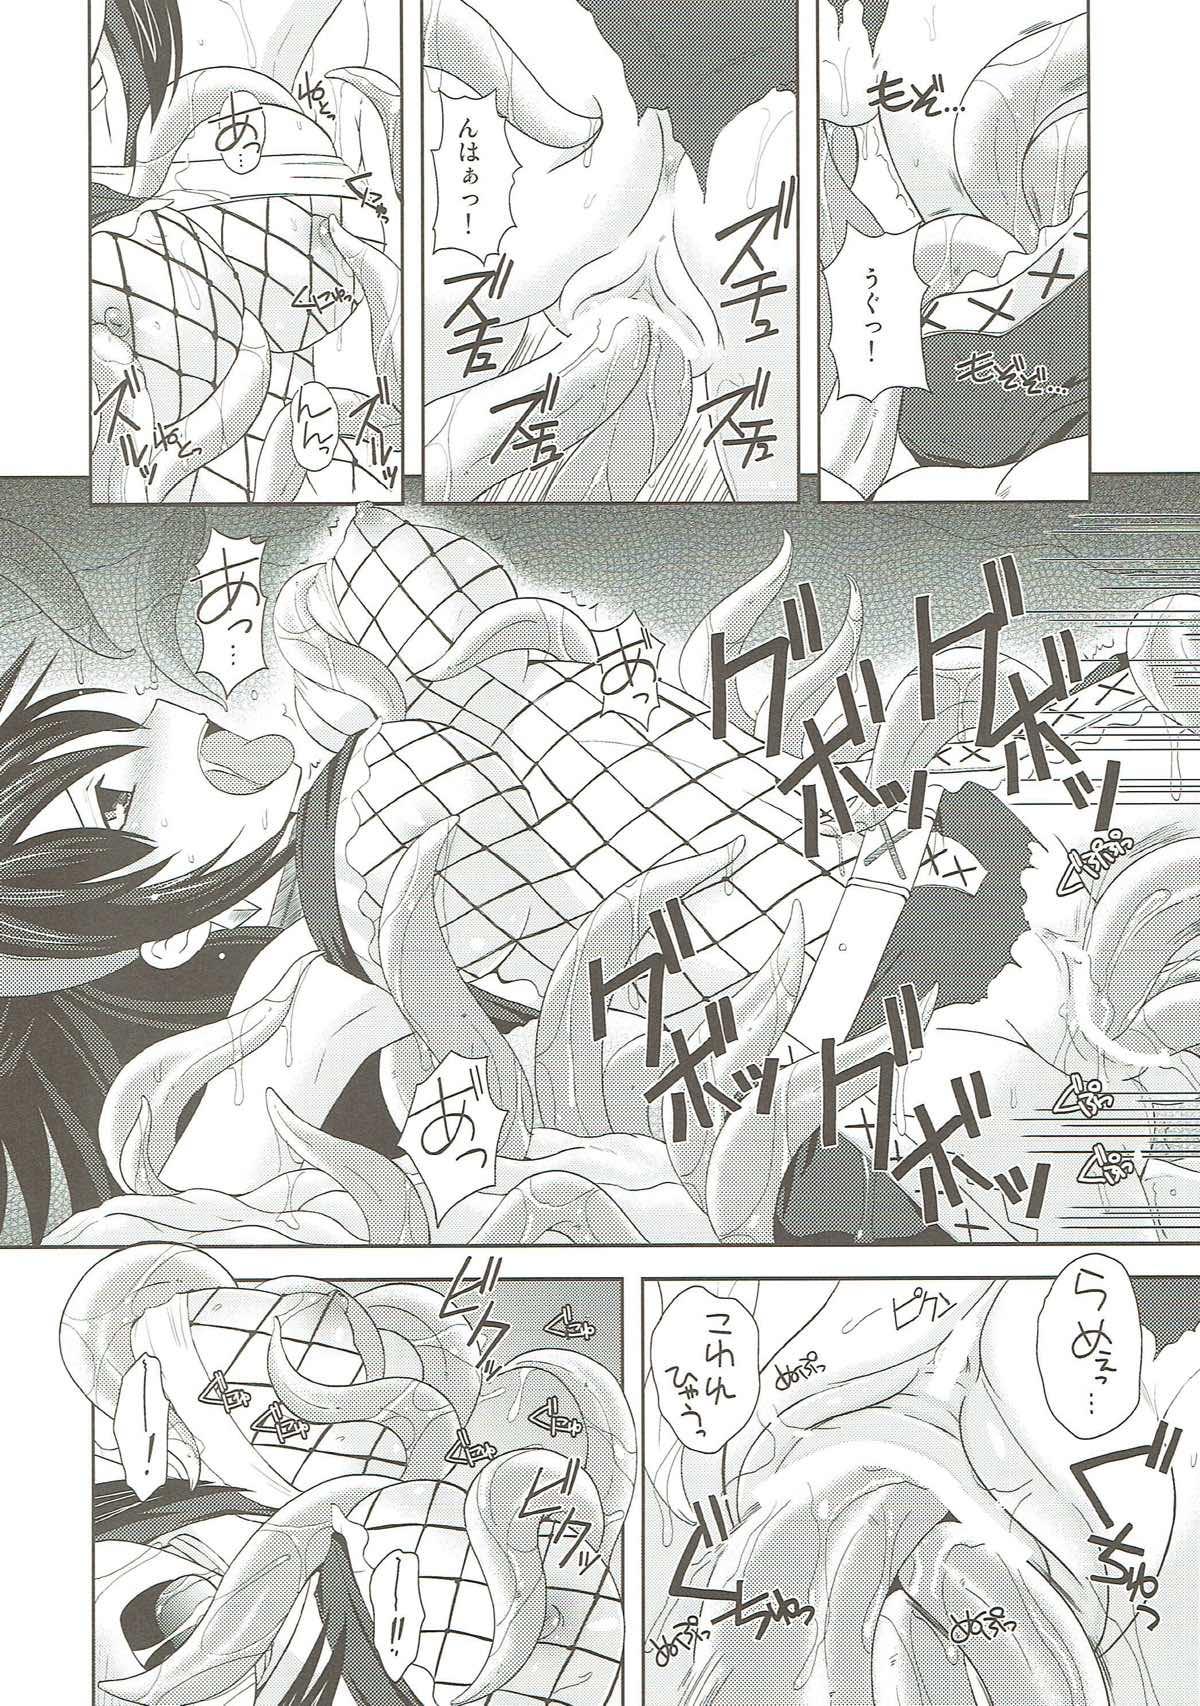 Screaming Narga Musume Oishii desu - Monster hunter Latin - Page 10